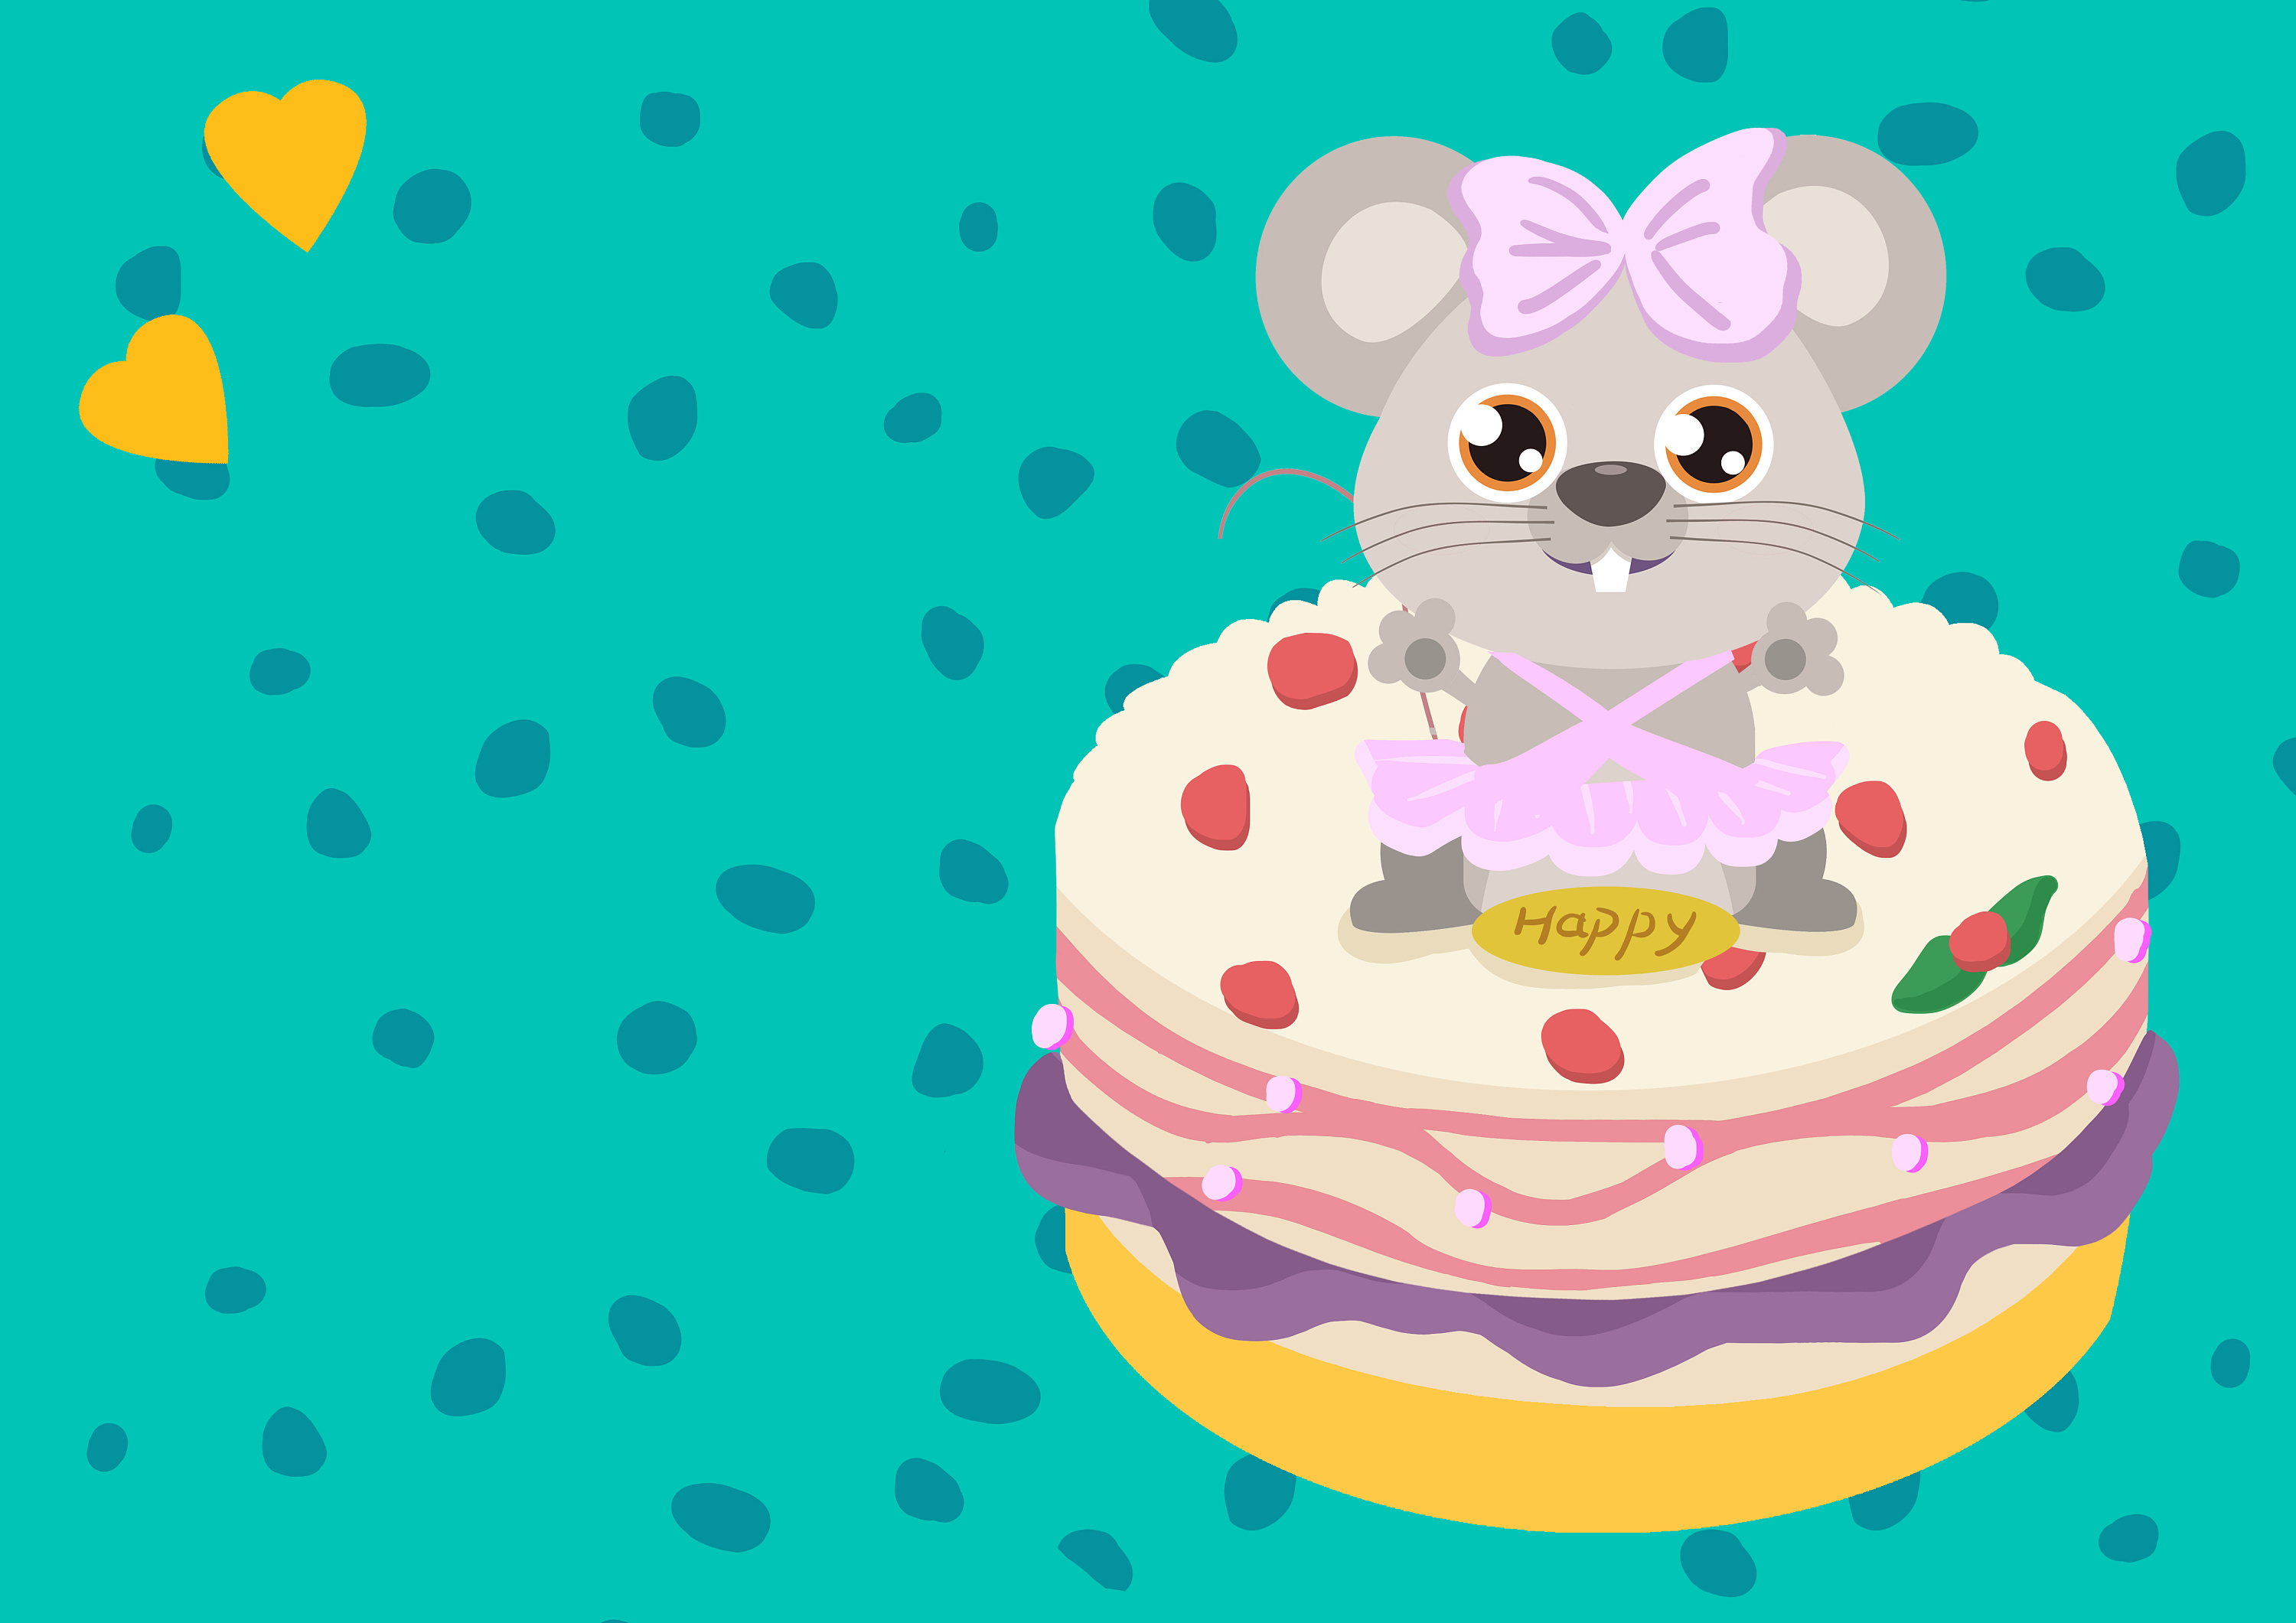 粉色米奇老鼠蛋糕 - 知乎